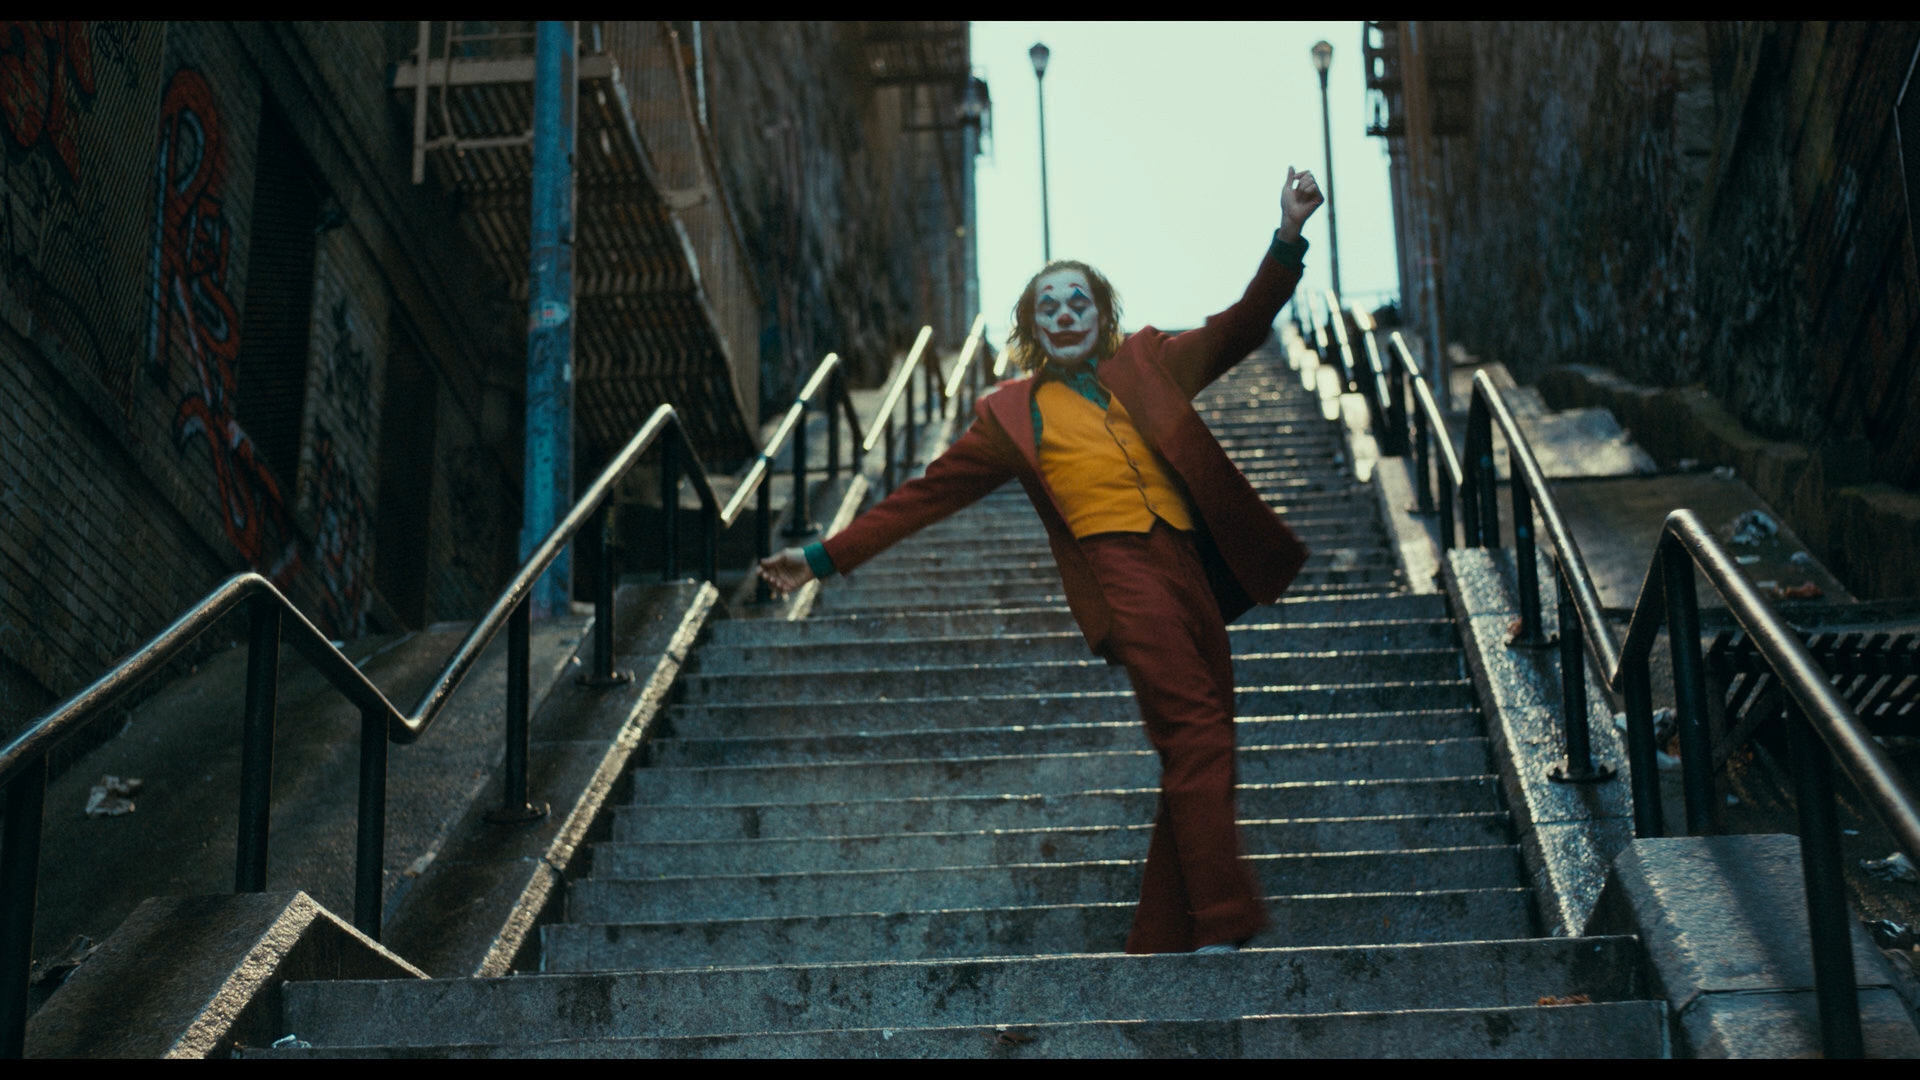 Joker 2019 Movie Joker Joaquin Phoenix Men Film Stills Movies DC Comics Makeup Dancing Stairs 1920x1080